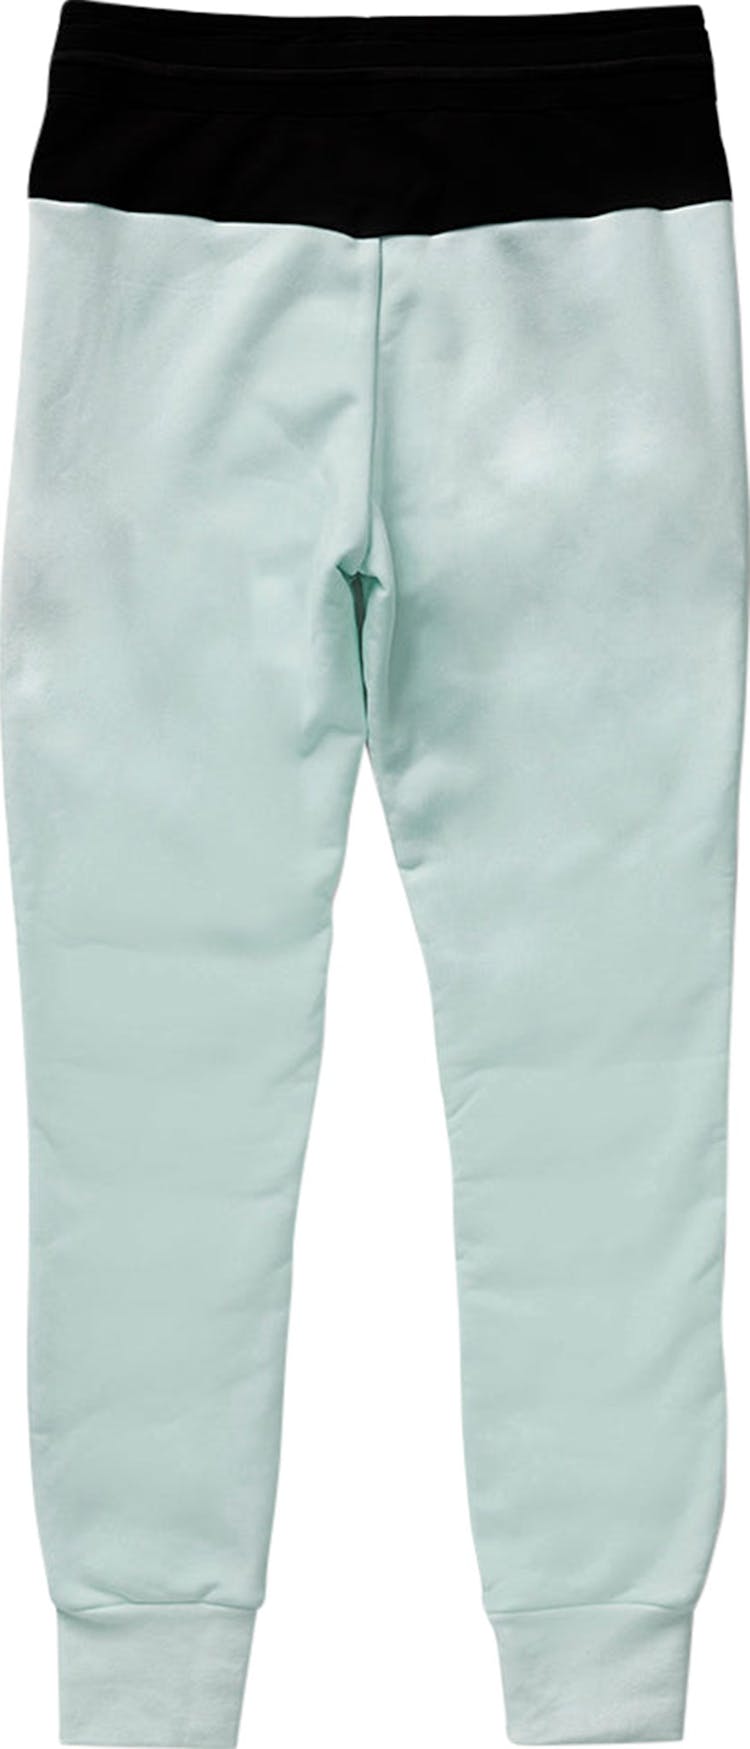 Numéro de l'image de la galerie de produits 2 pour le produit Pantalon jogging en duvet hybride - Femme